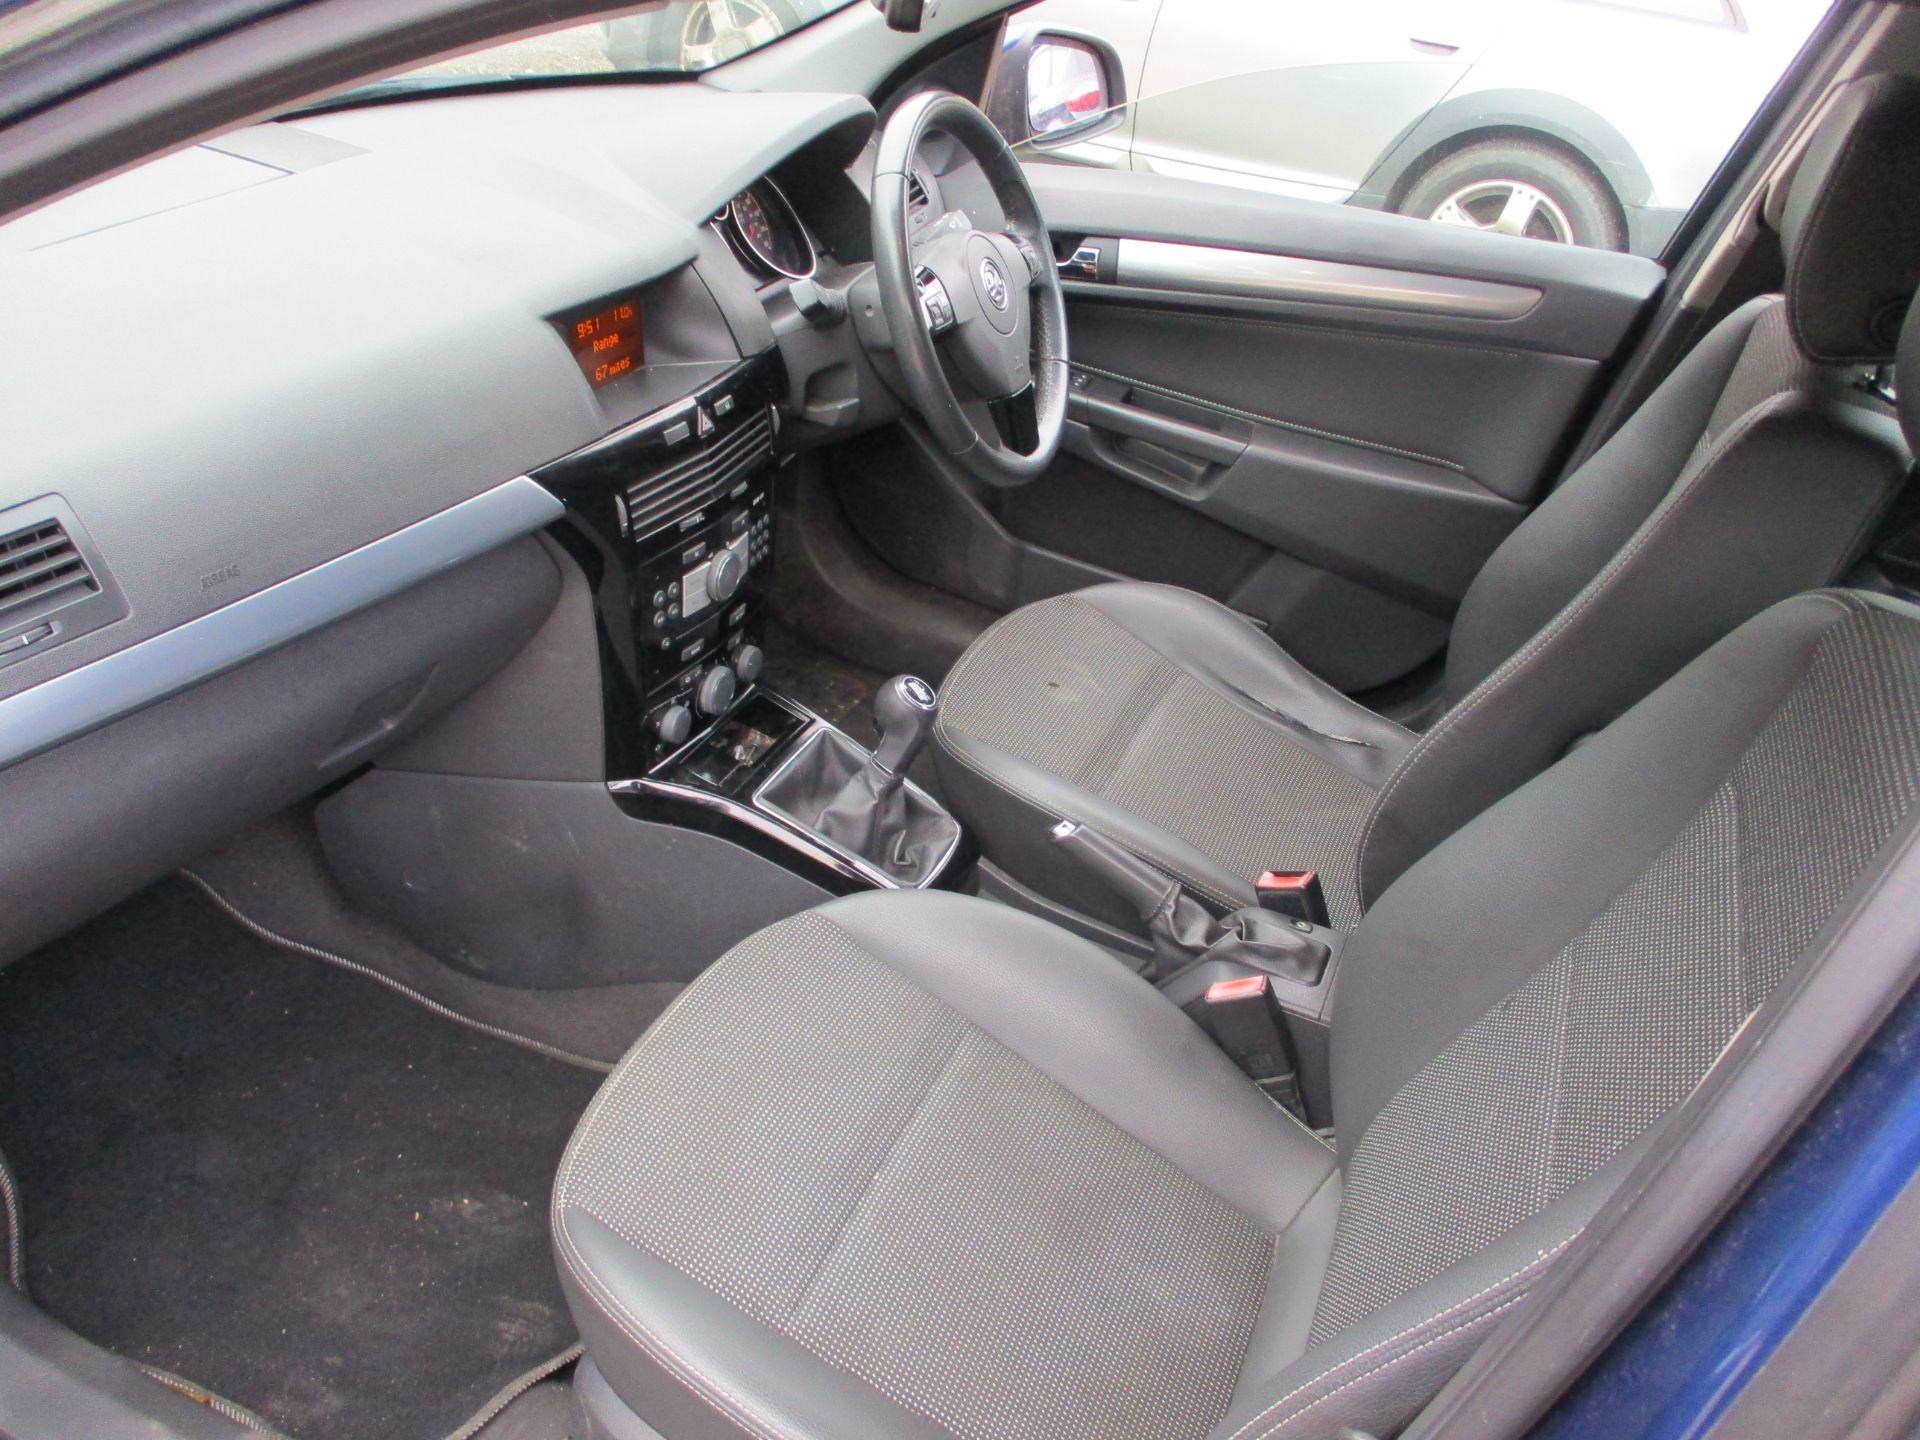 2009 VAUXHALL ASTRA DESIGN - 1598cc 5dr Hatchback (Blue, 103k) - Image 10 of 15